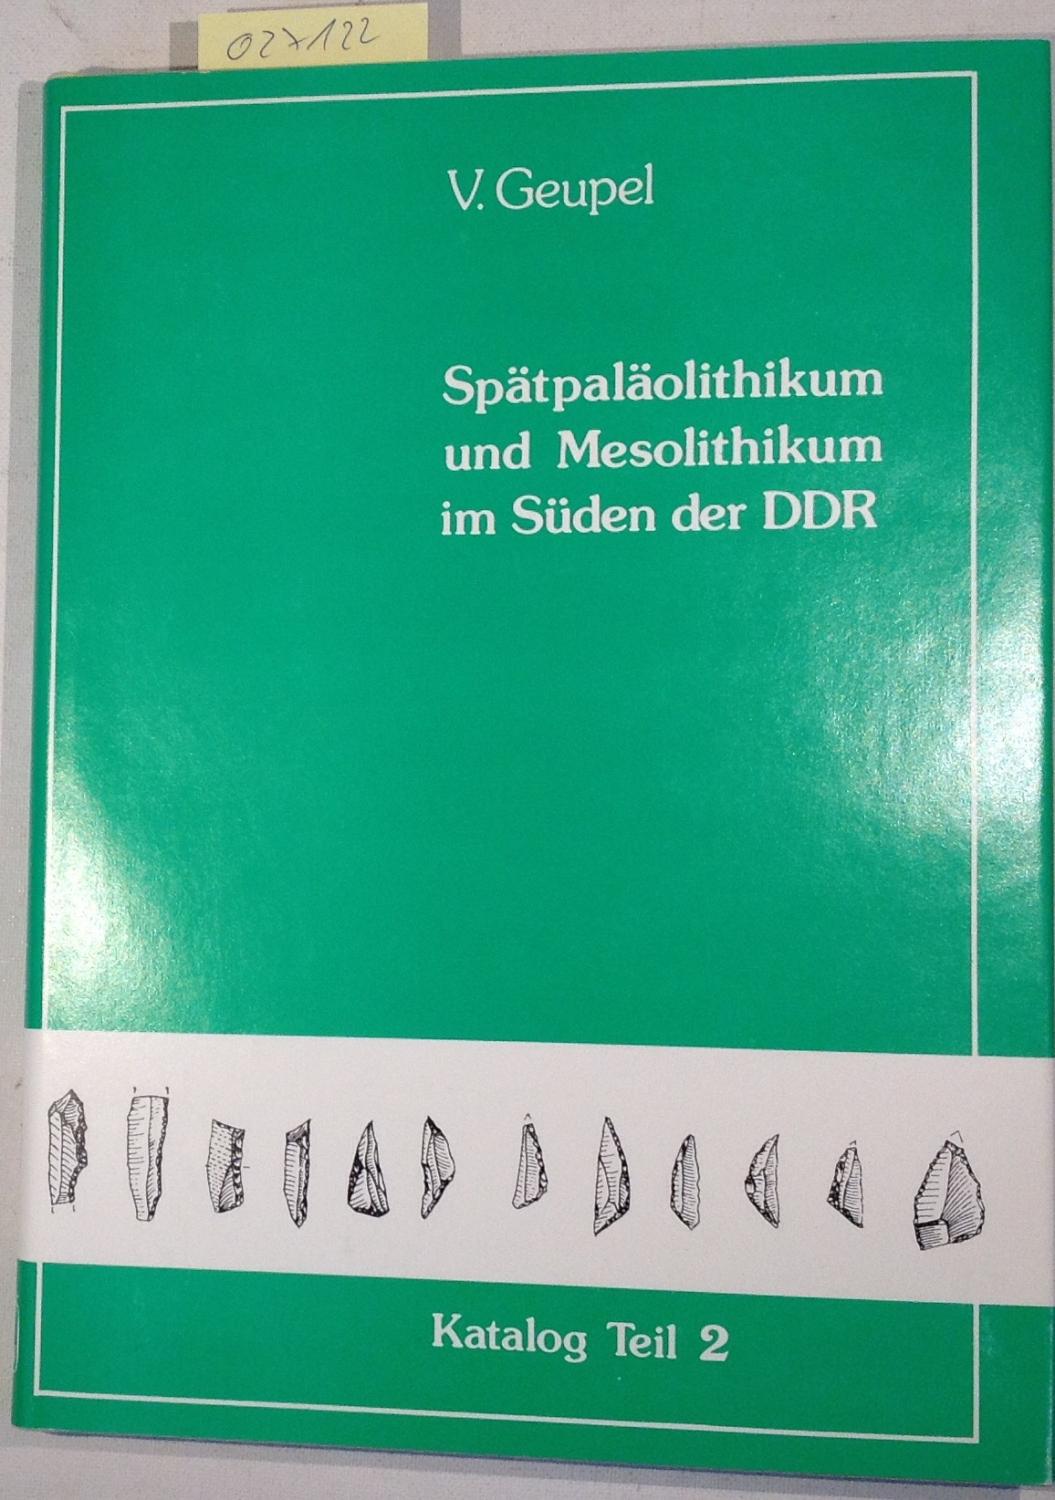 Spätpaläolithikum und Mesolithikum im Süden der DDR. Katalog Teil II, Bezirk Cottbus